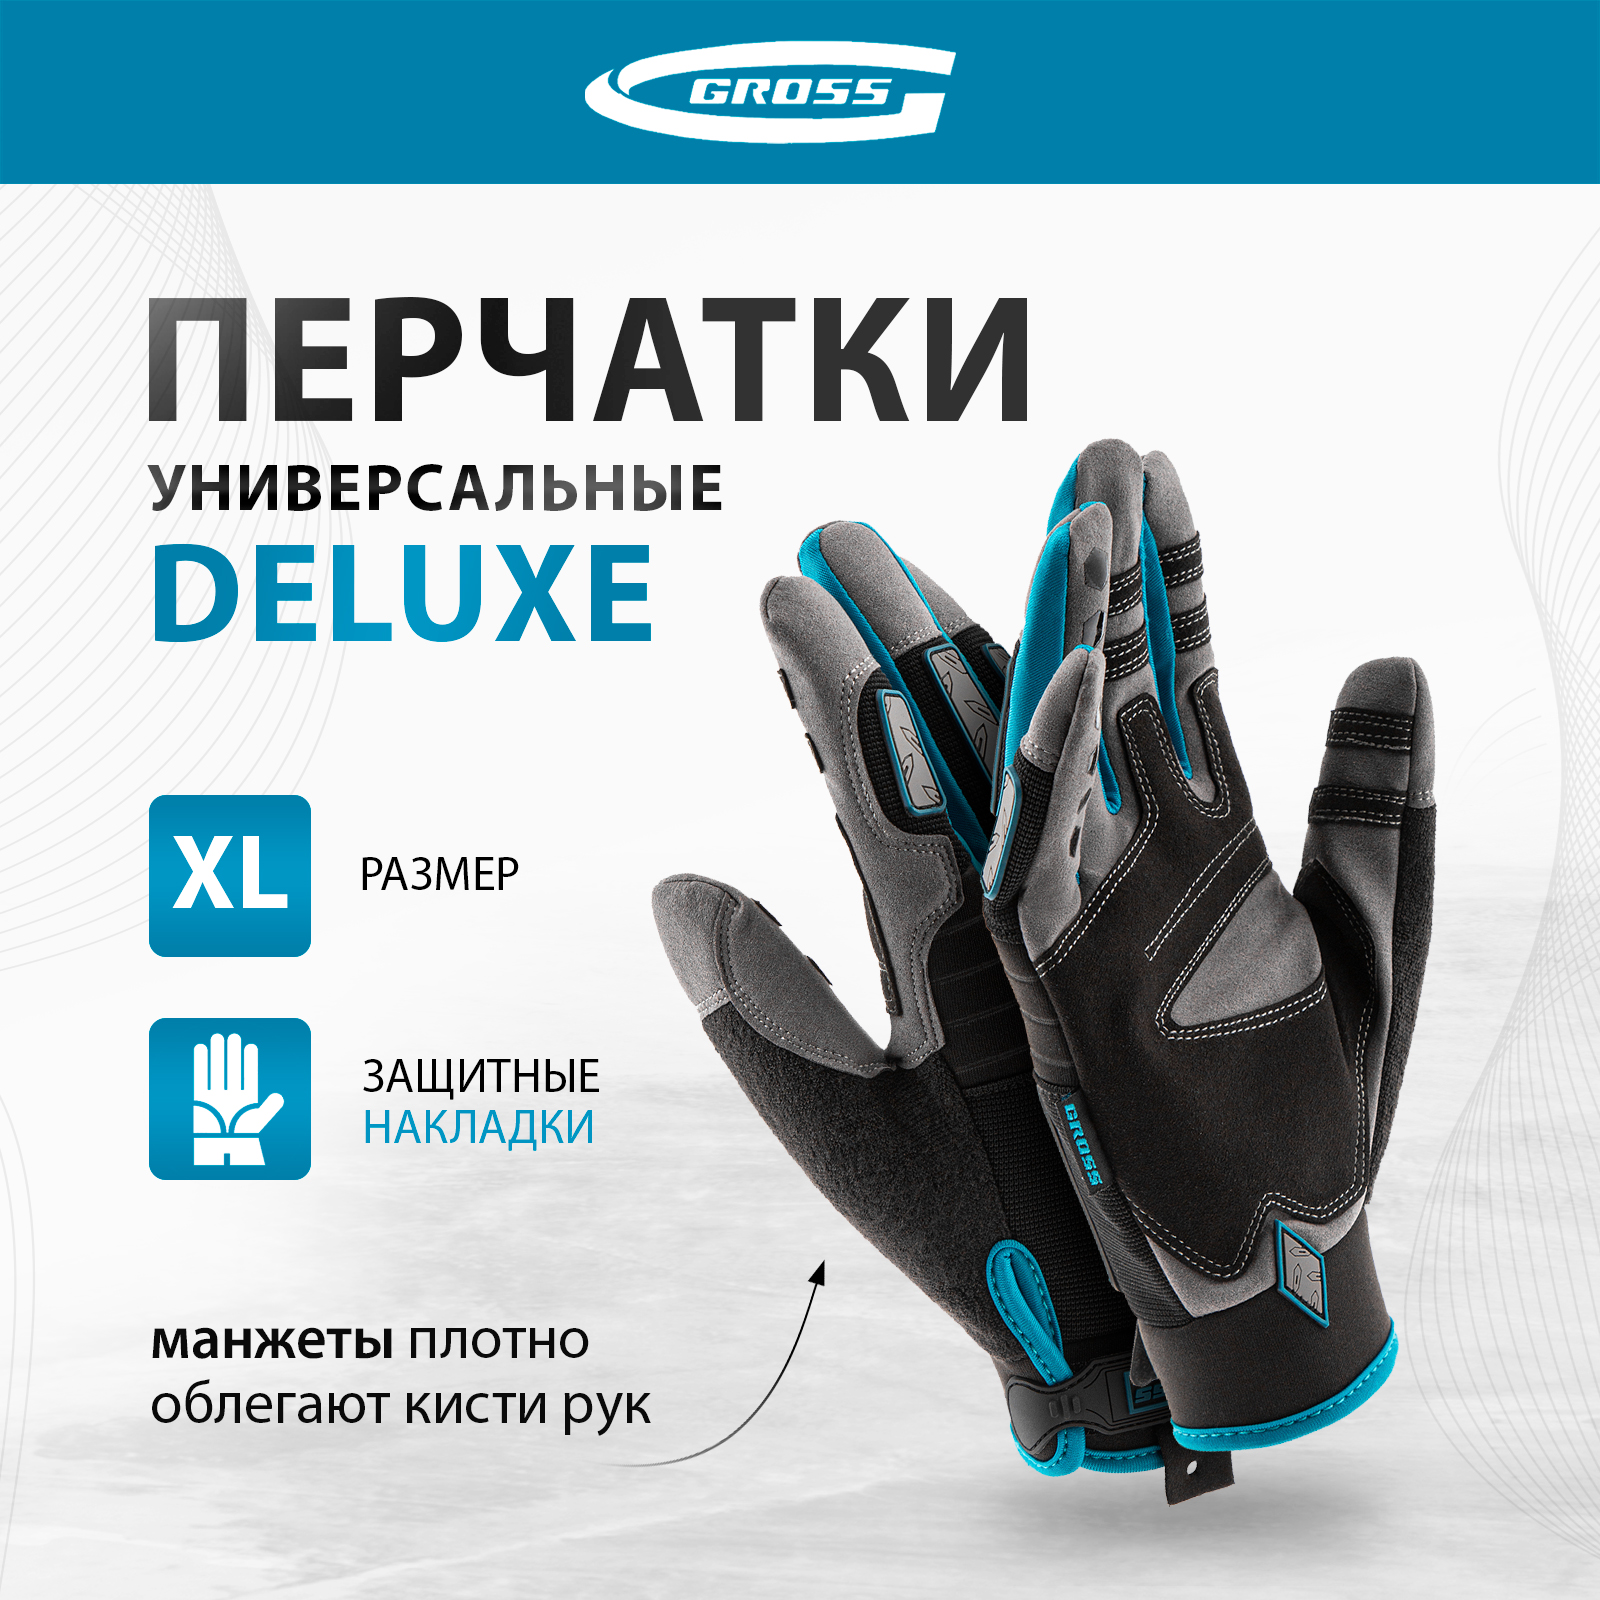 Перчатки универсальные, усиленные GROSS DELUXE, размер XL (10) 90326 купить в интернет-магазине, цены на Мегамаркет